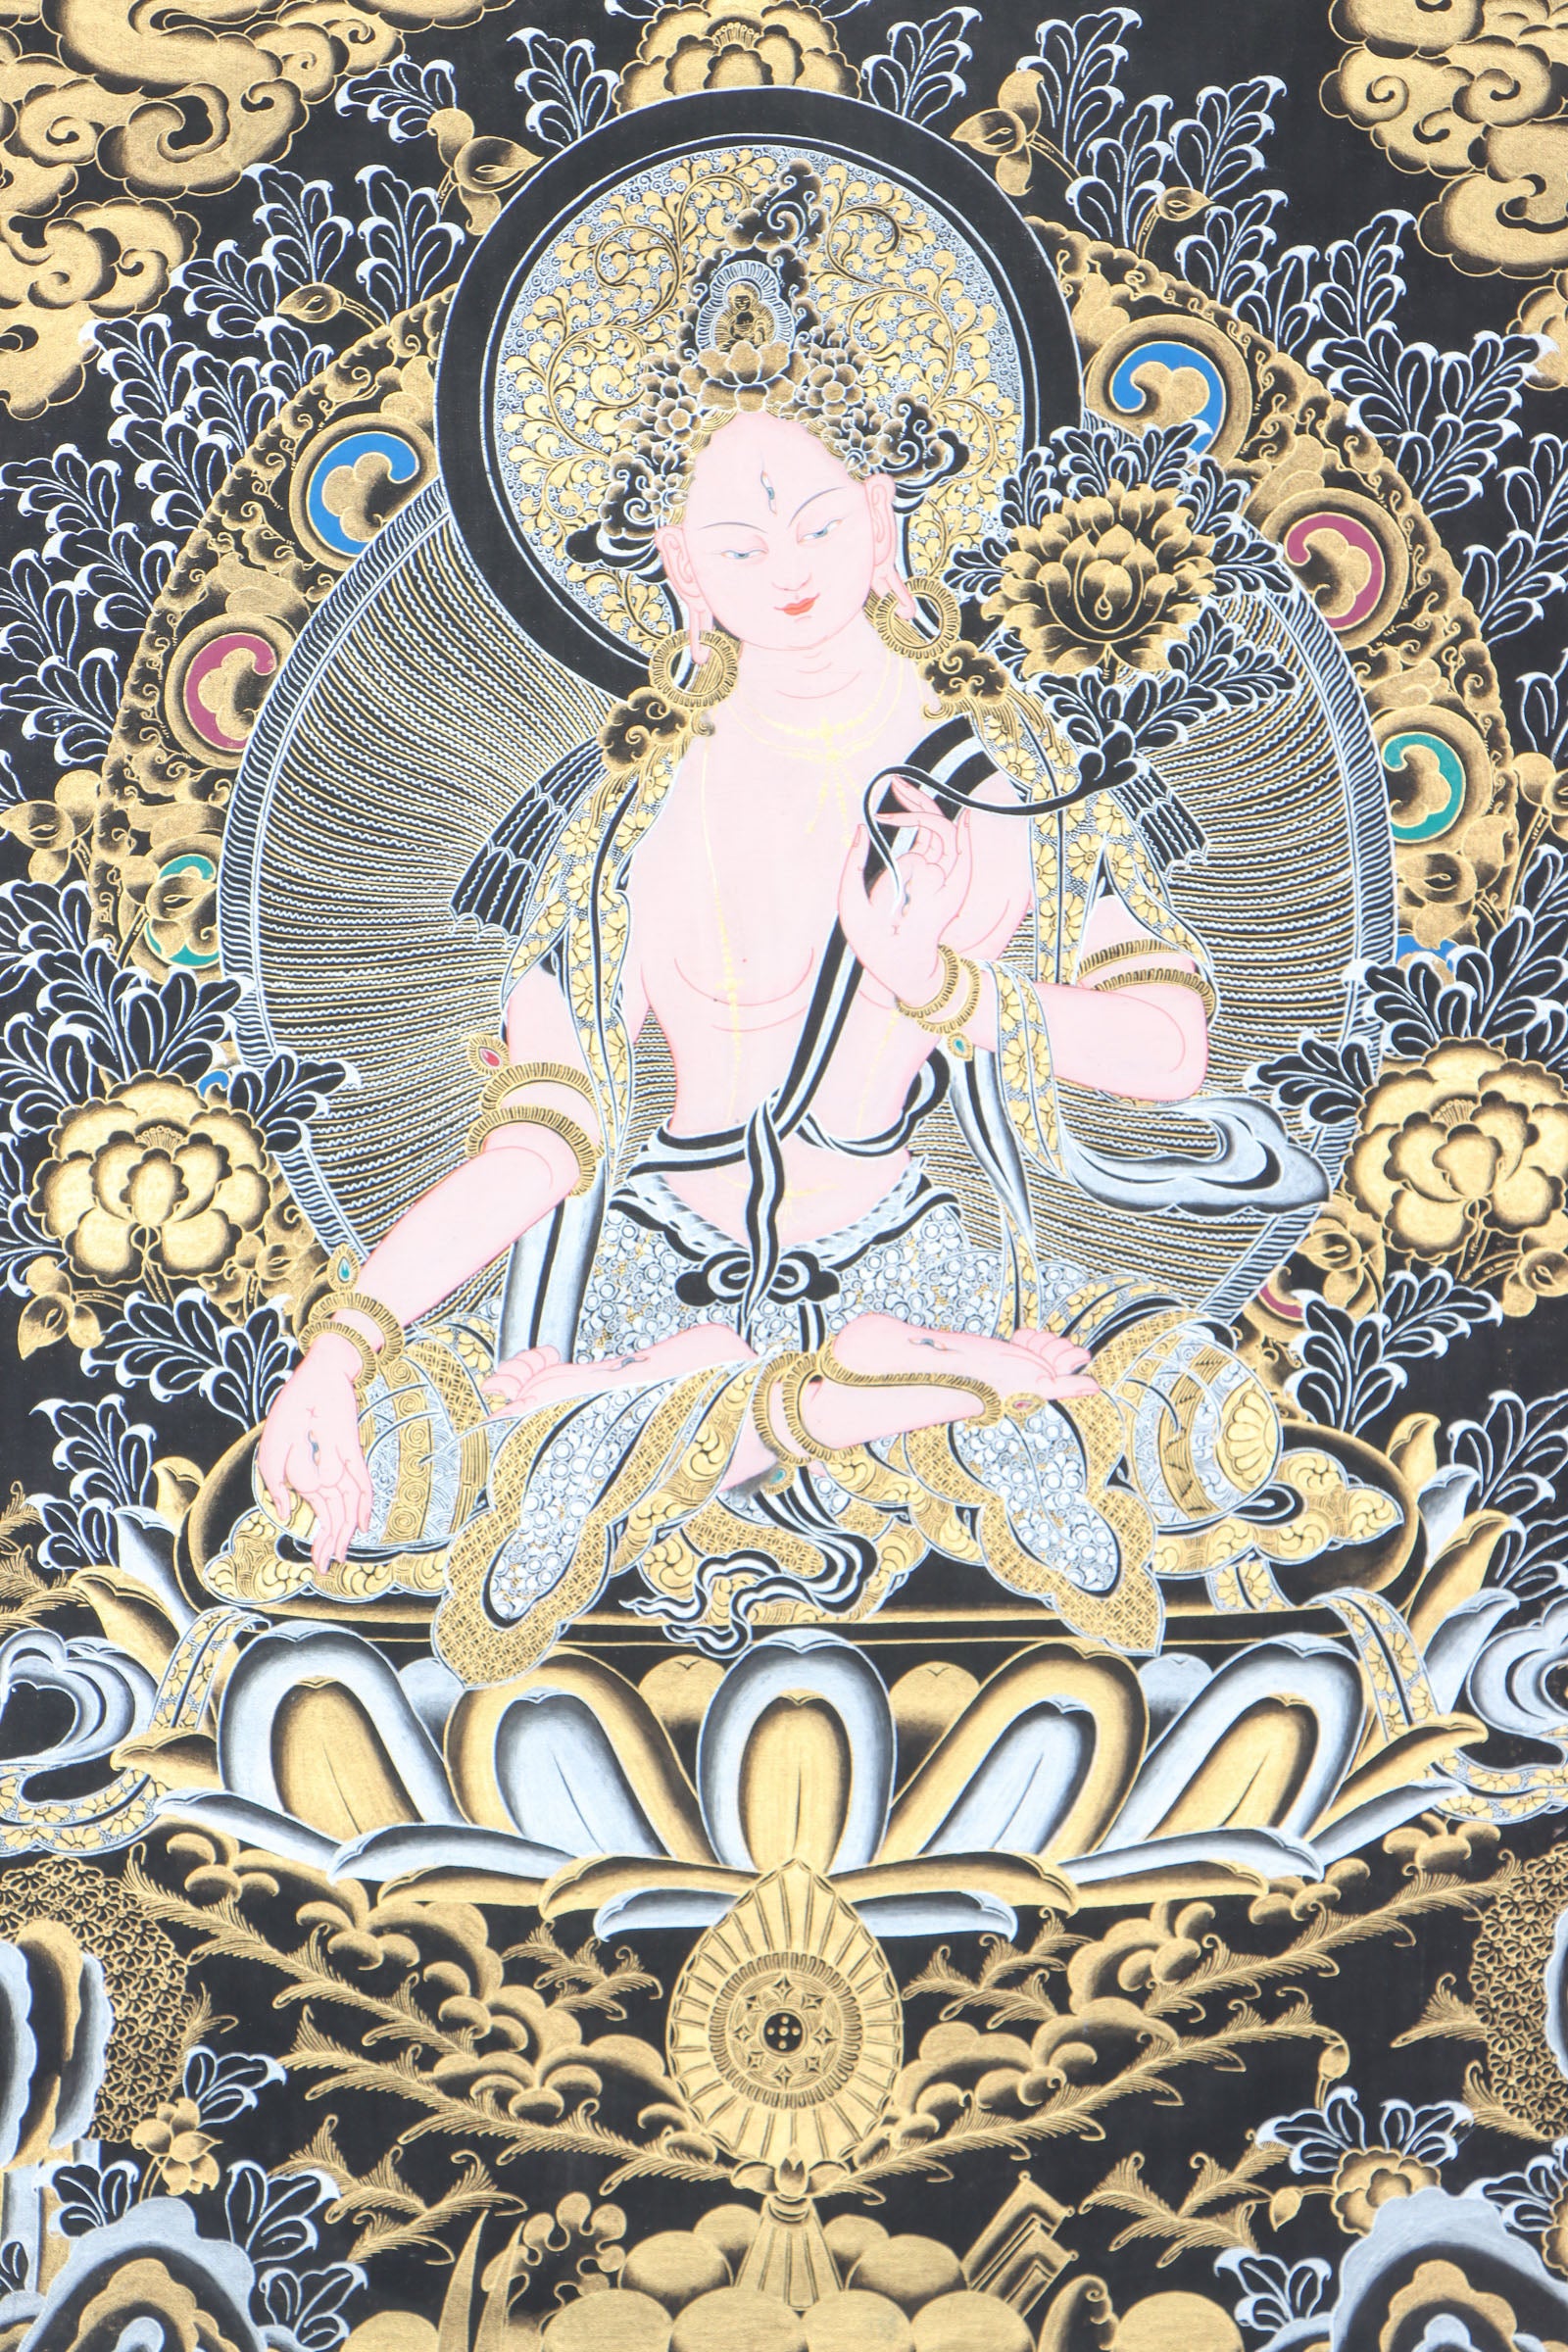 White Tara Thangka for guidance and blessings for long life.